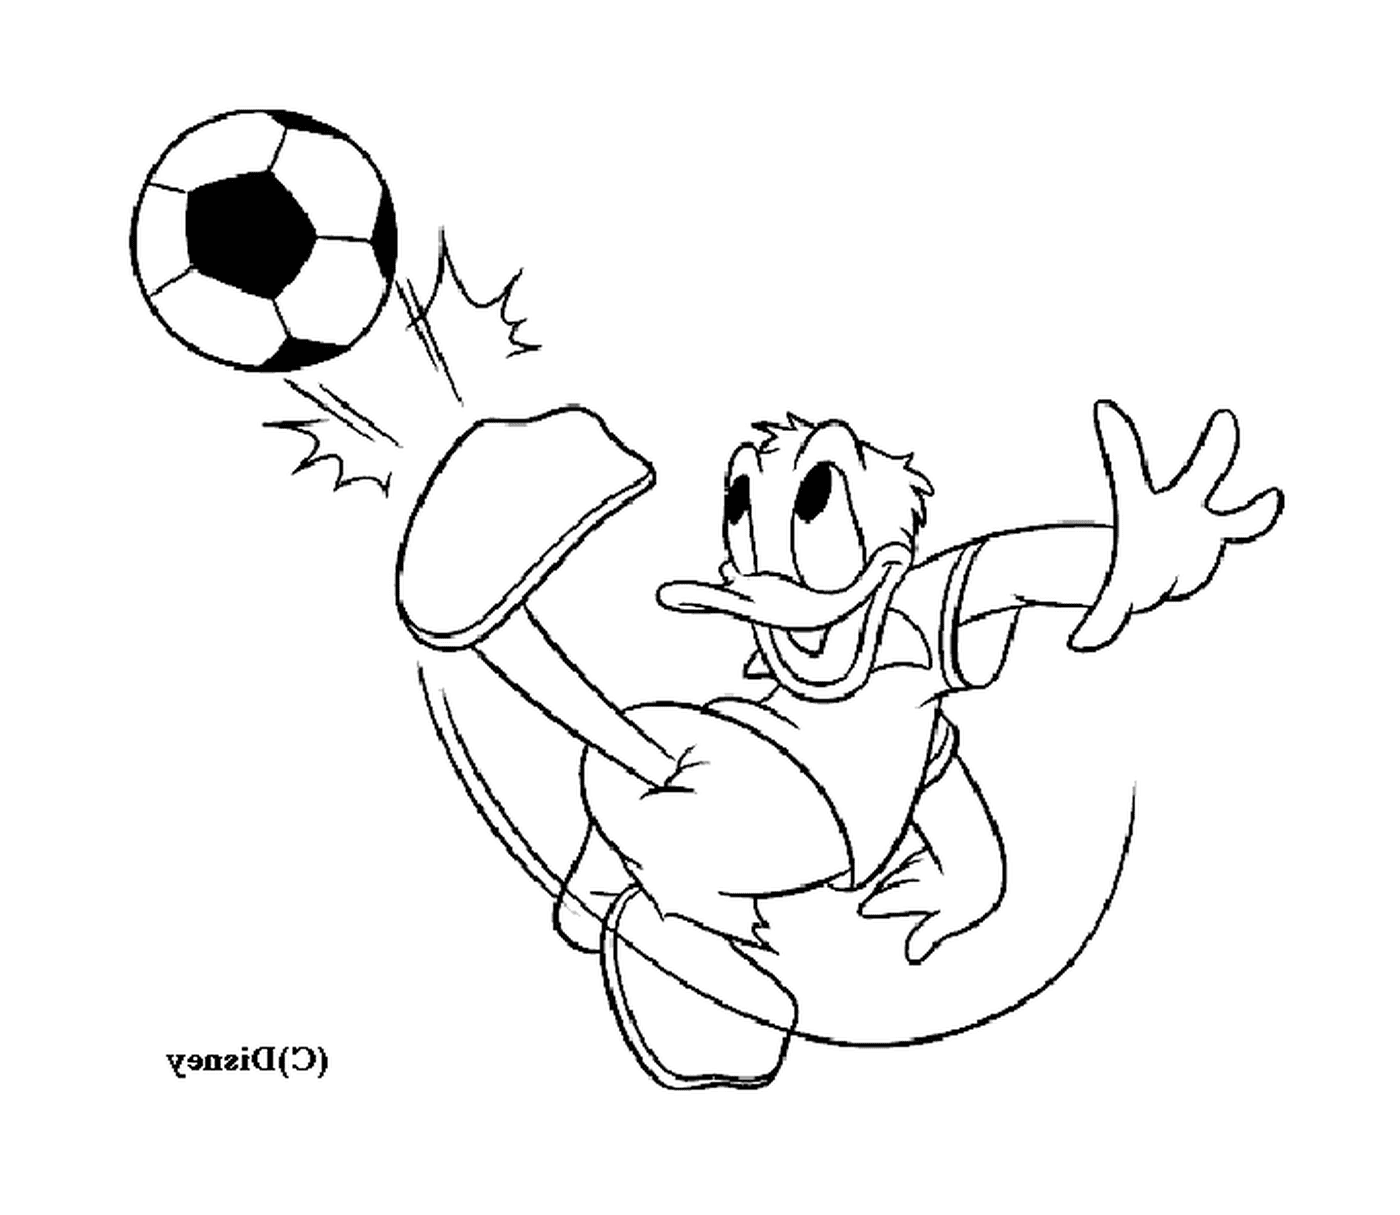  Donald spielt begeistert Fußball 